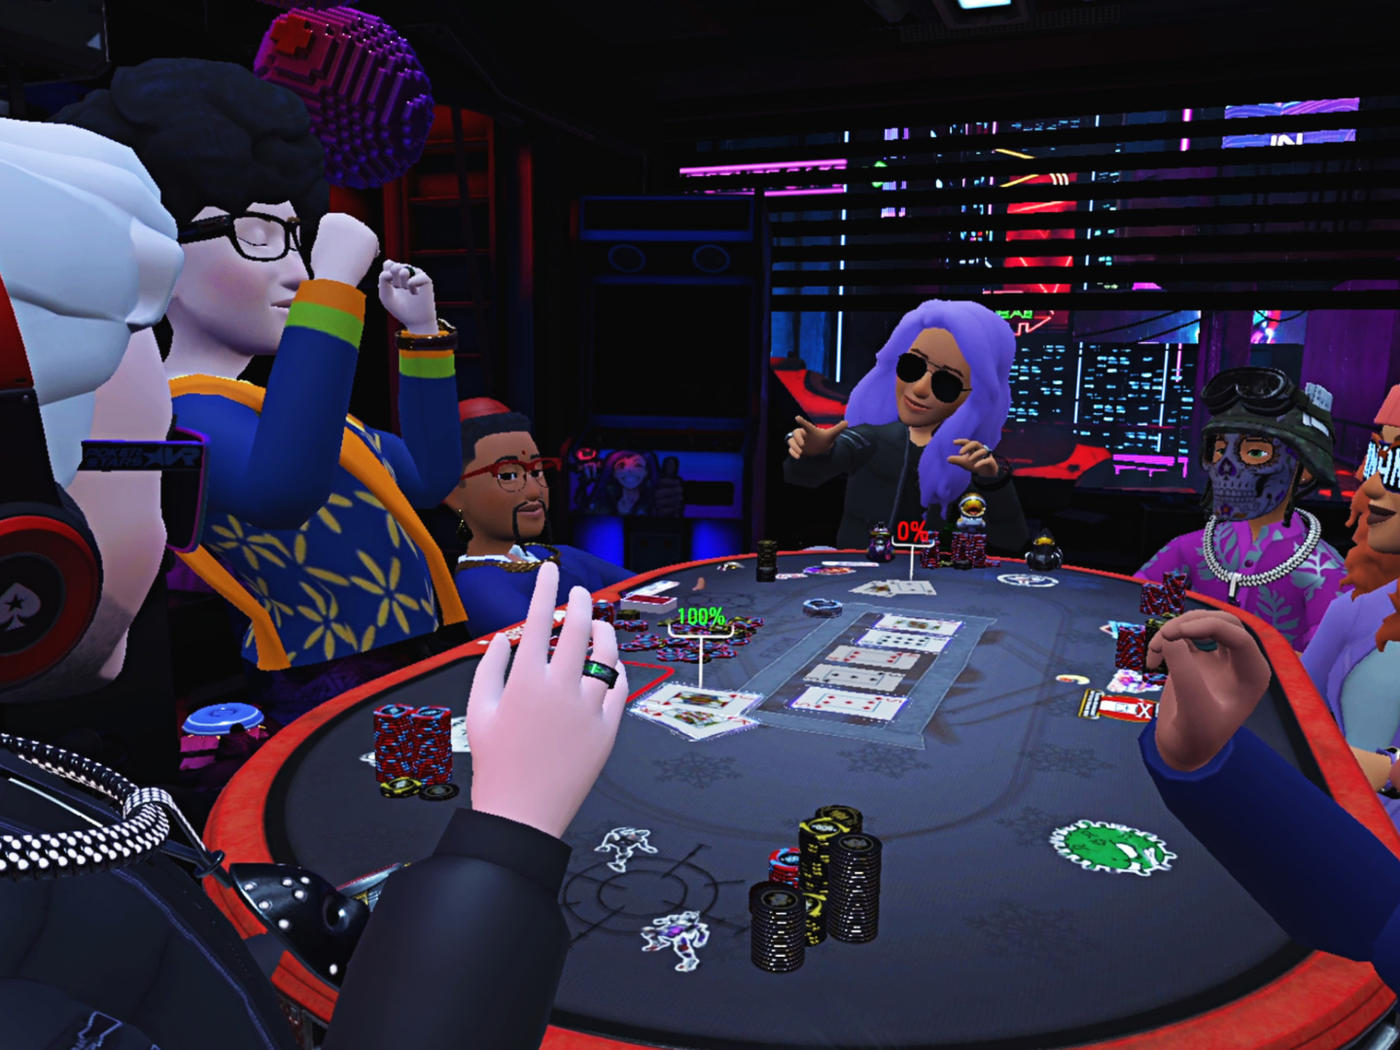 Comunidad Virtual de Poker